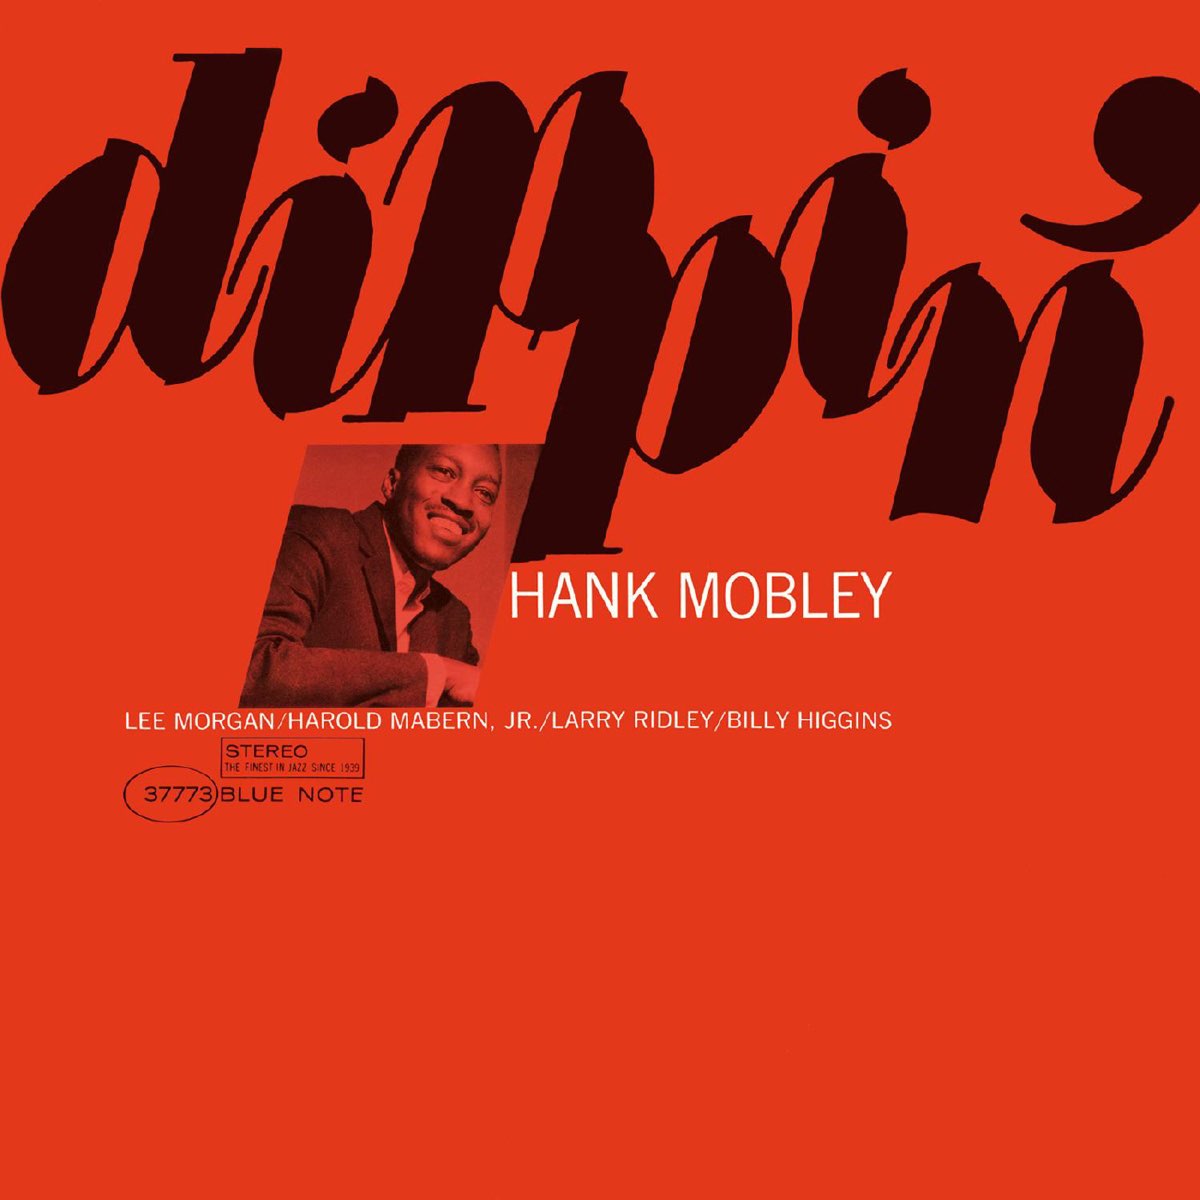 Dippin' - ハンク・モブレーのアルバム - Apple Music